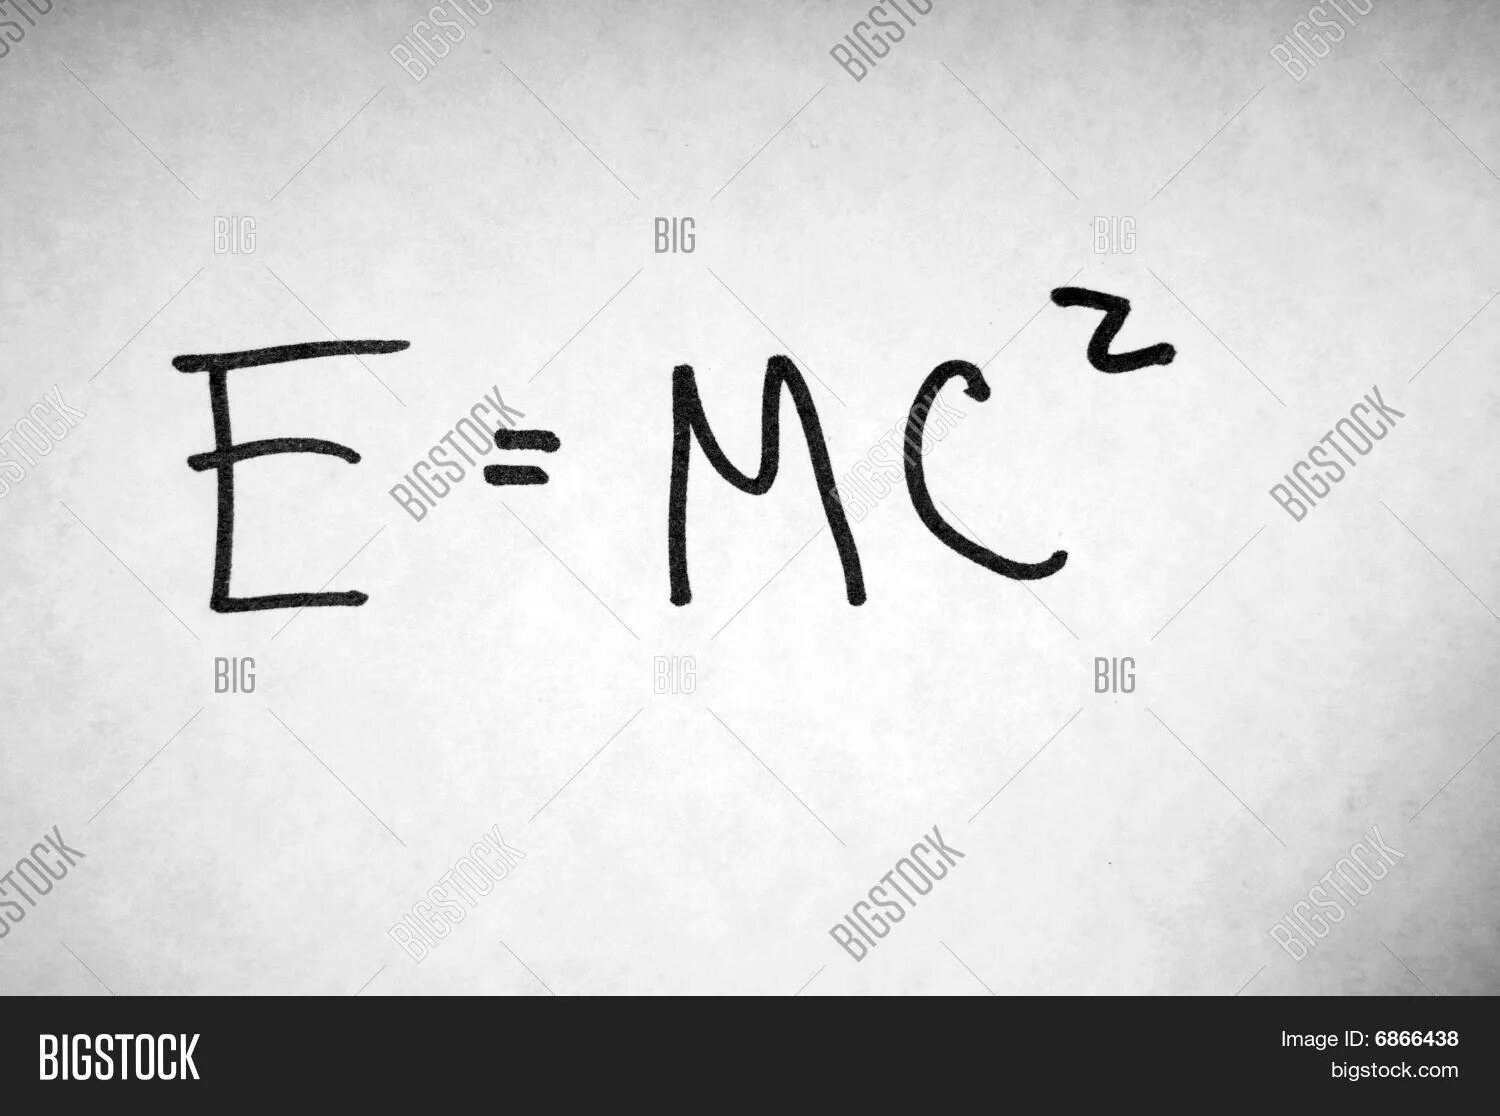 Е равно мс. Формула Эйнштейна e mc2. Е равно МЦ квадрат. Е равно МС квадрат. E=mc².